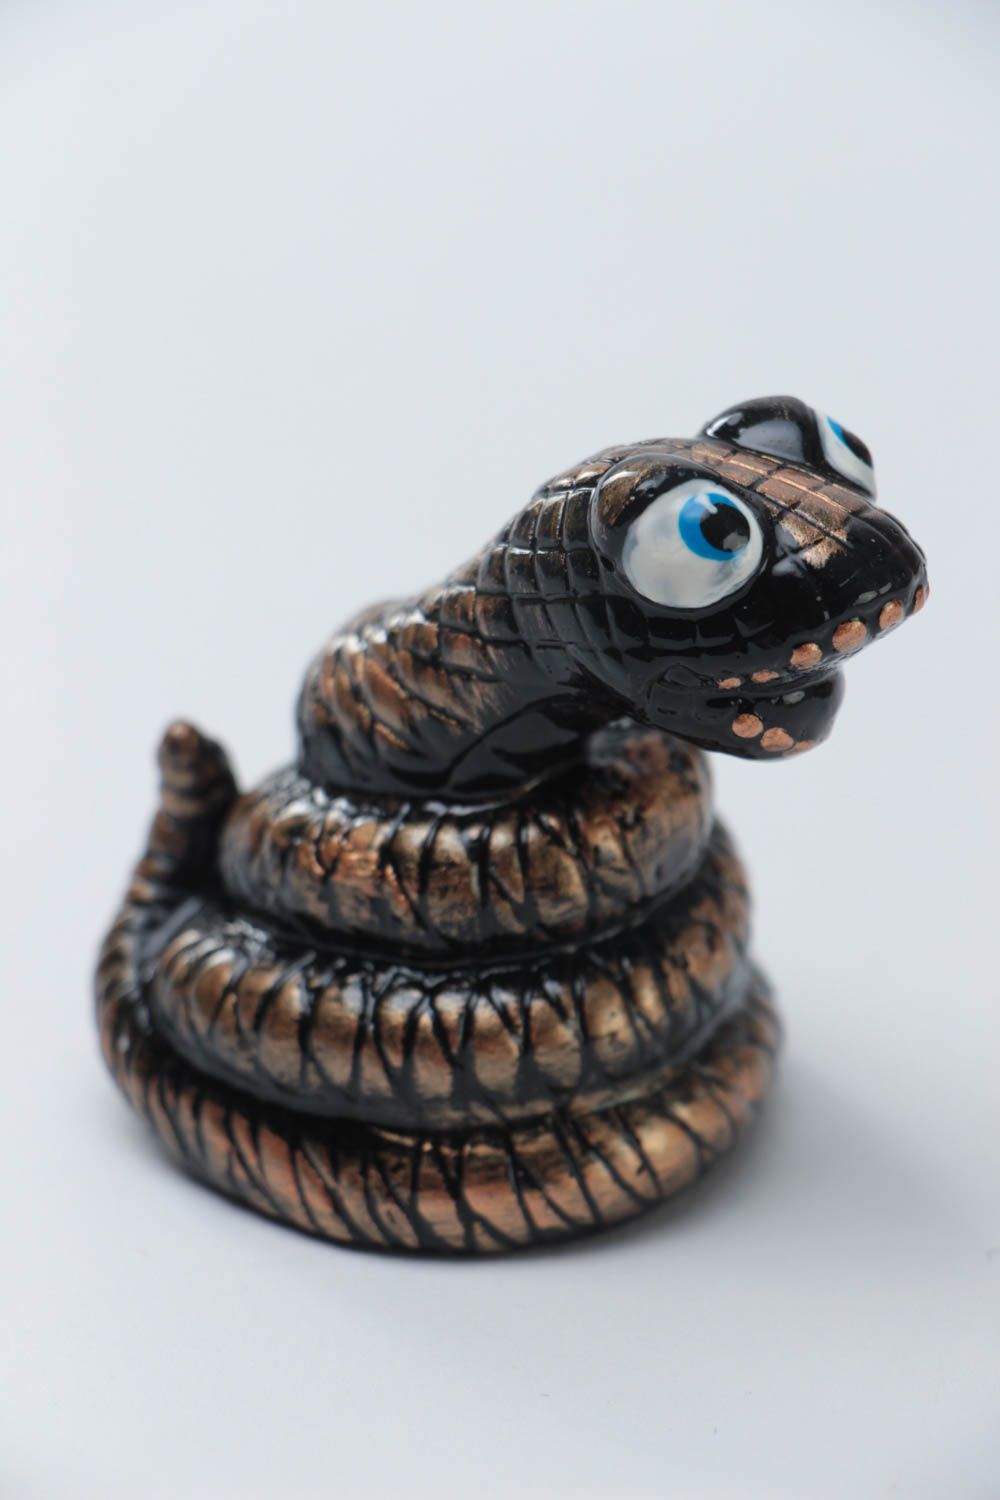 Темная статуэтка змеи из гипса ручной работы оригинальная красивая расписная фото 2